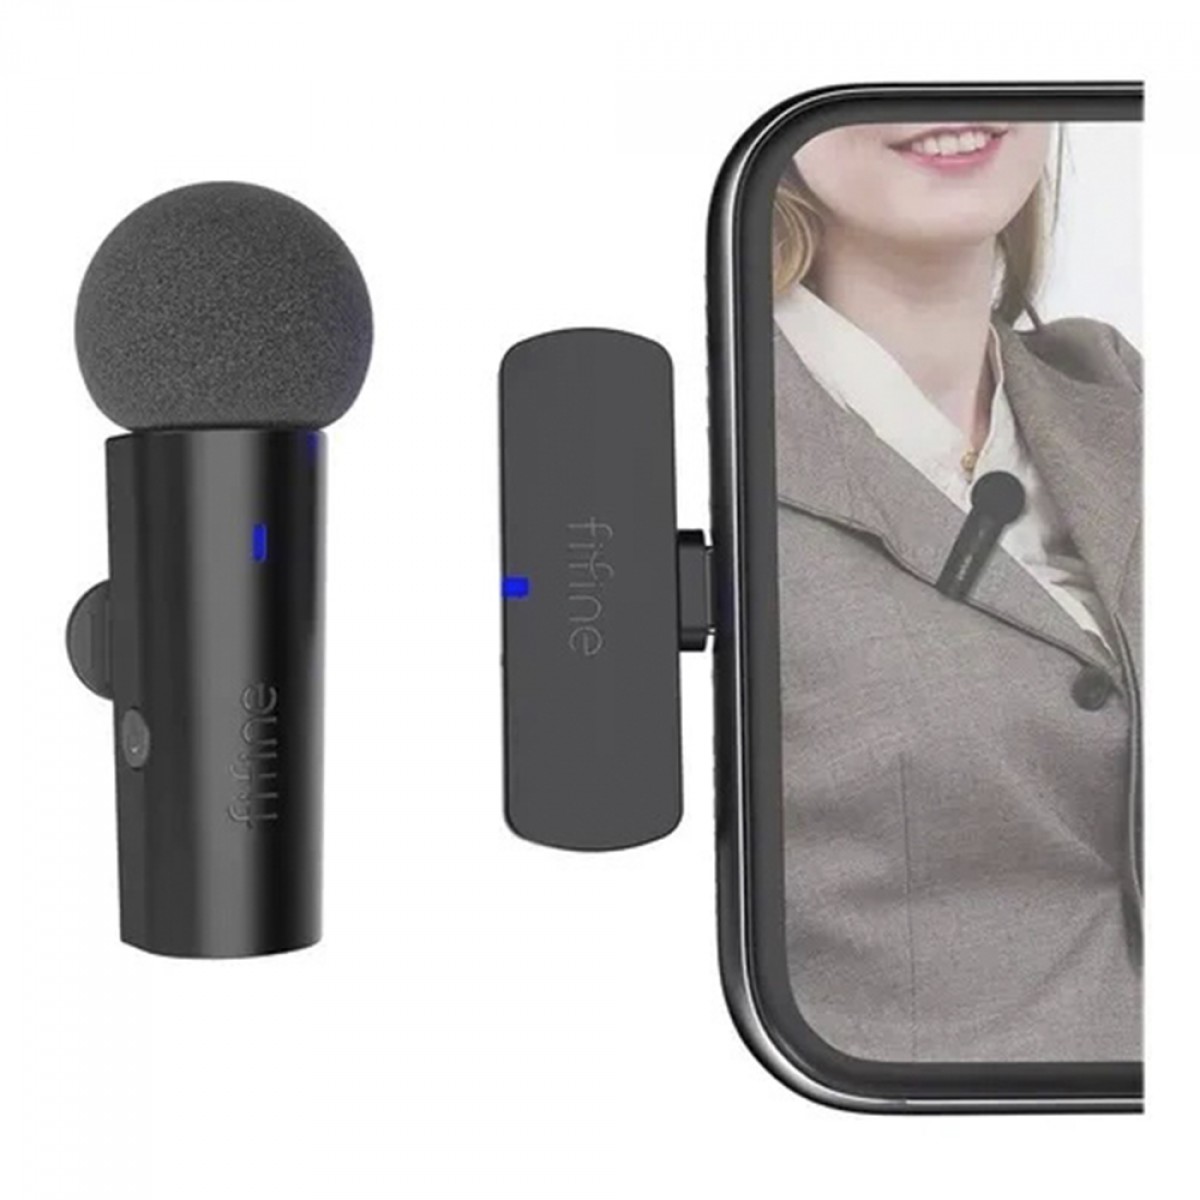 Microfone de Lapela Fifine M6, Wireless, USB Tipo-C, Black